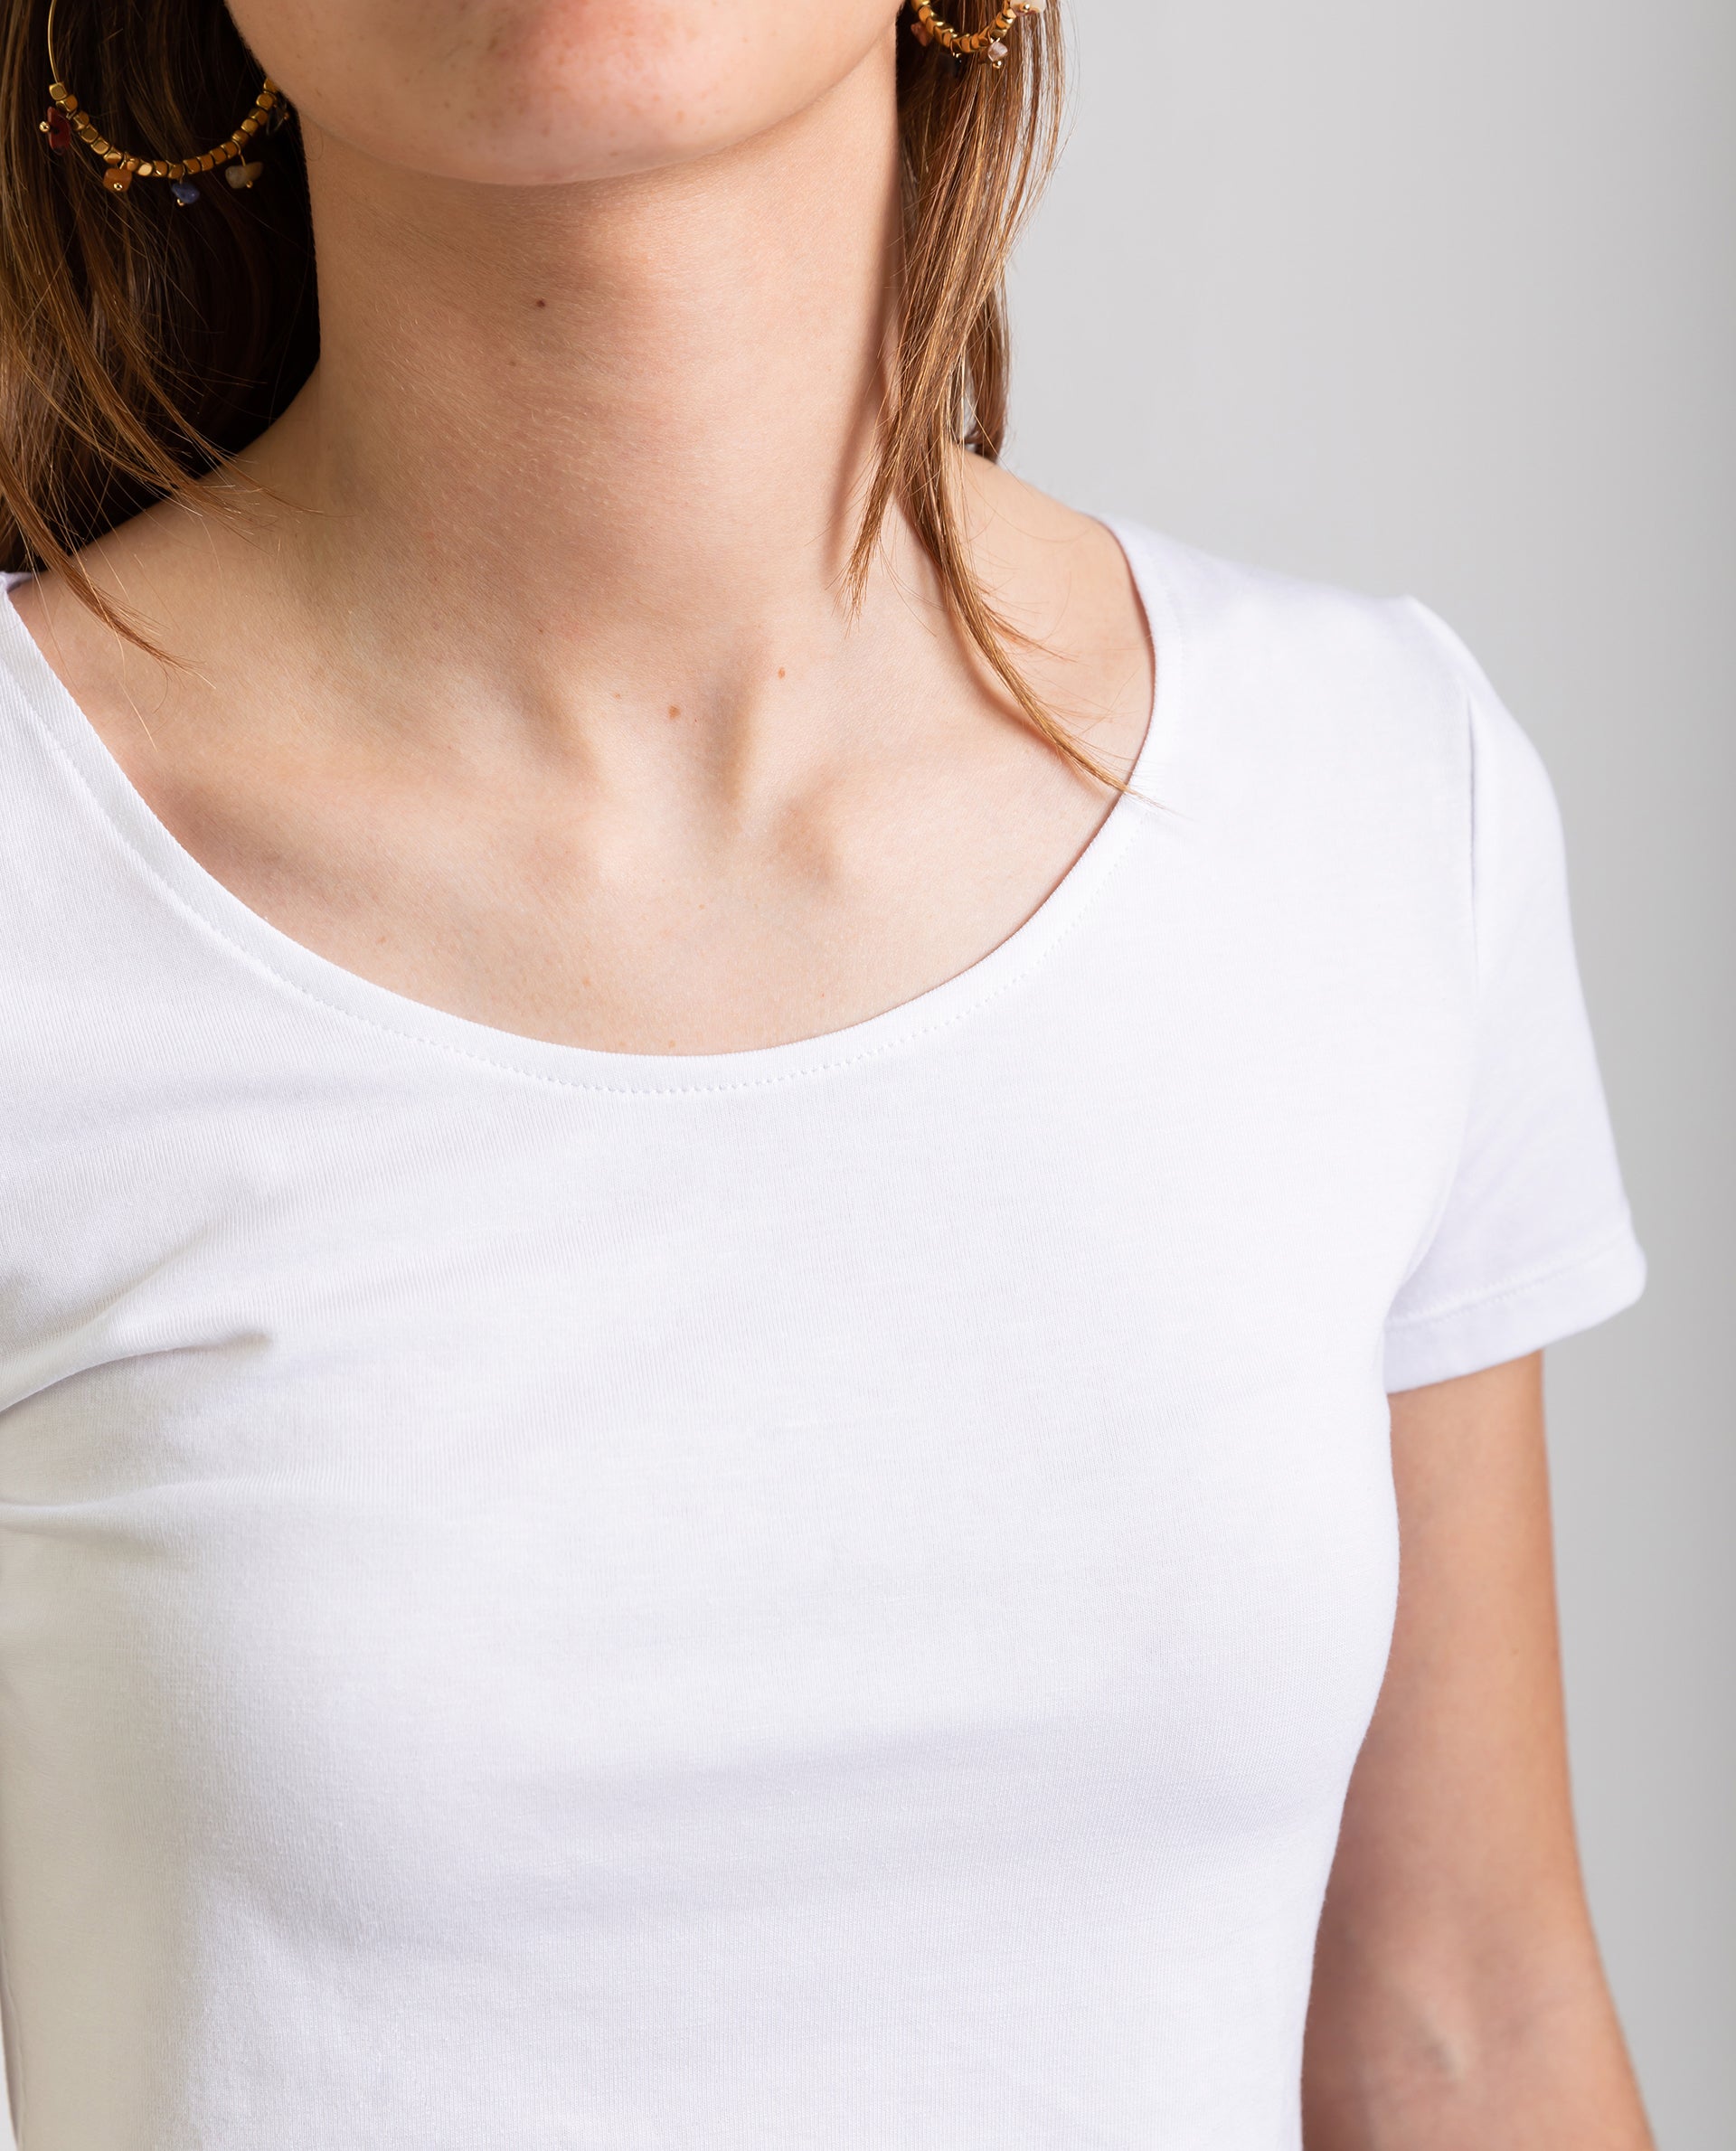 Camiseta Crop Top Blanco de Mujer con Corta | THE-ARE